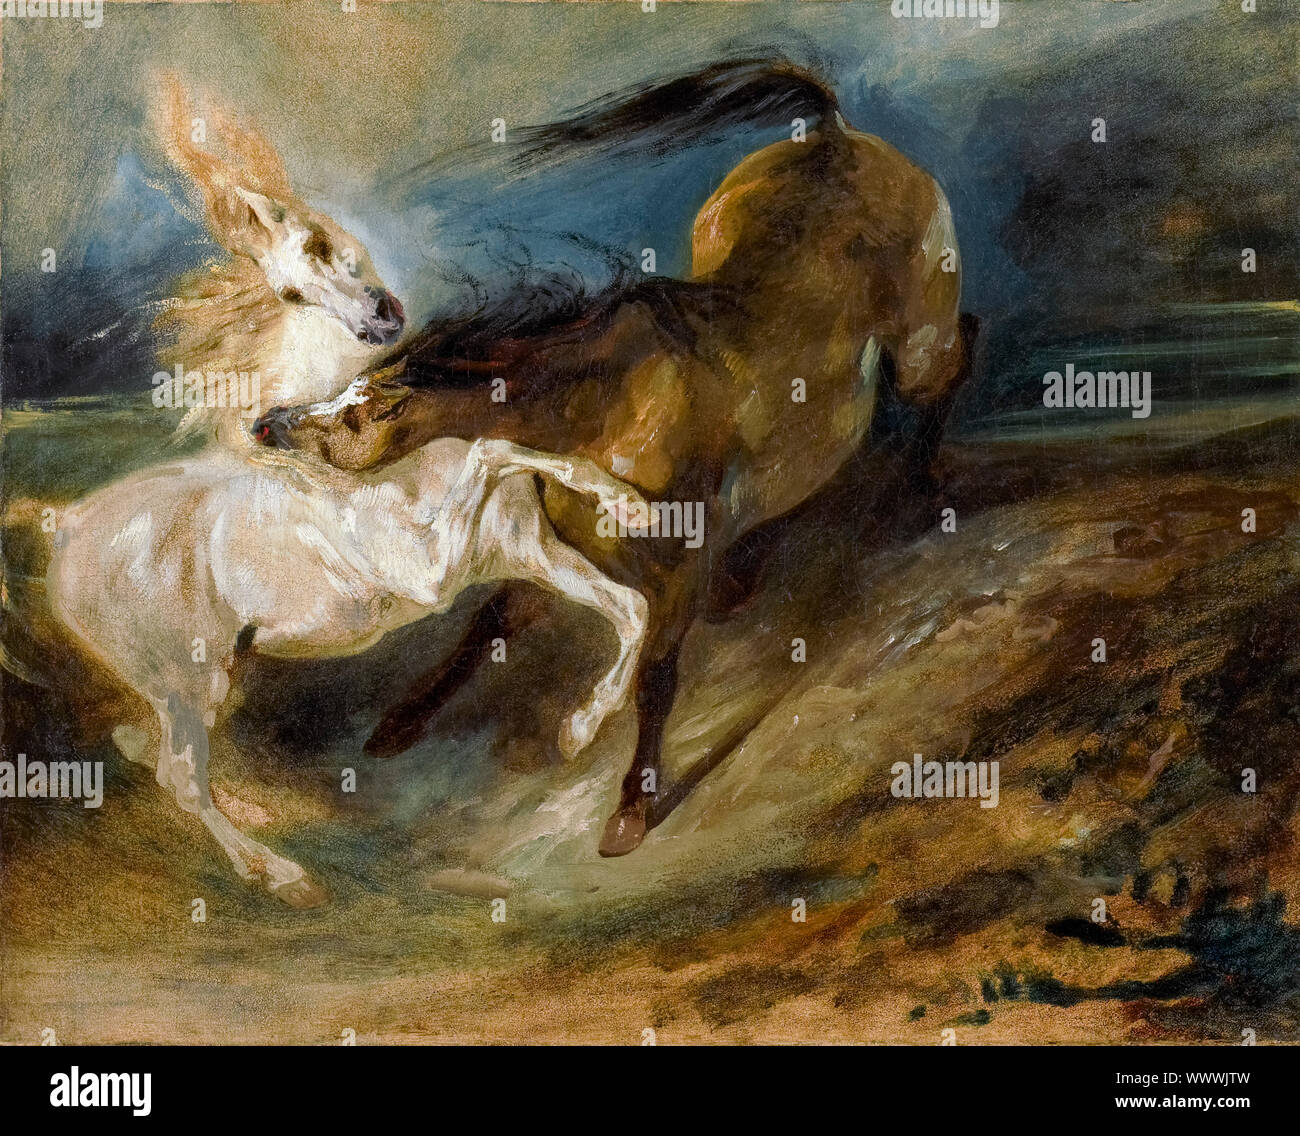 Eugène Delacroix, deux chevaux de combats dans un paysage orageux, peinture, vers 1828 Banque D'Images